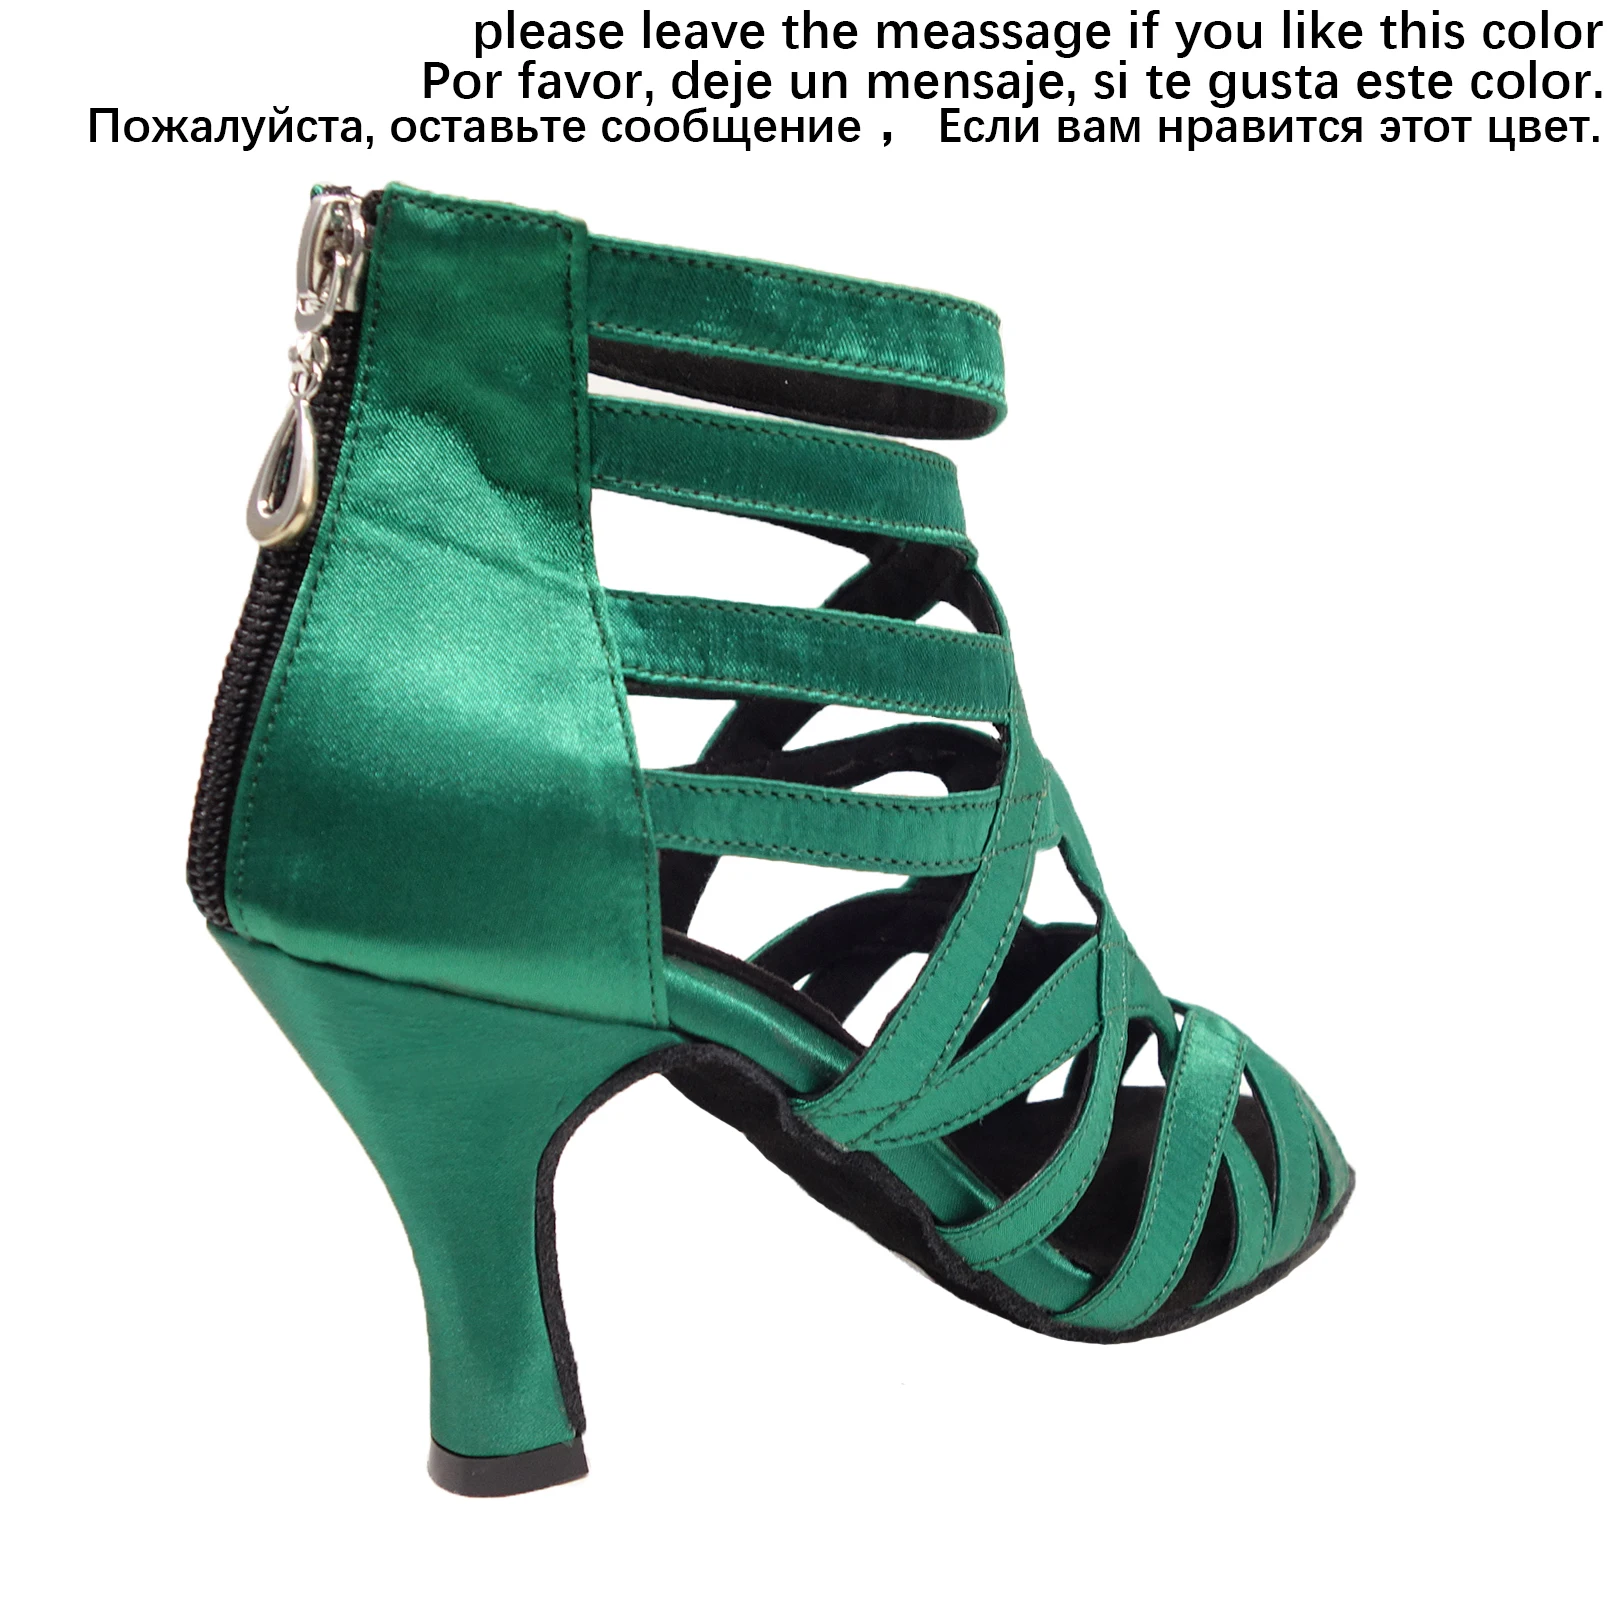 HXYOO/ стиль; черные туфли на высоком каблуке 8-10 см; Профессиональная удобная женская обувь для латинских танцев; Обувь для бальных танцев, танго, сальсы; ZC41